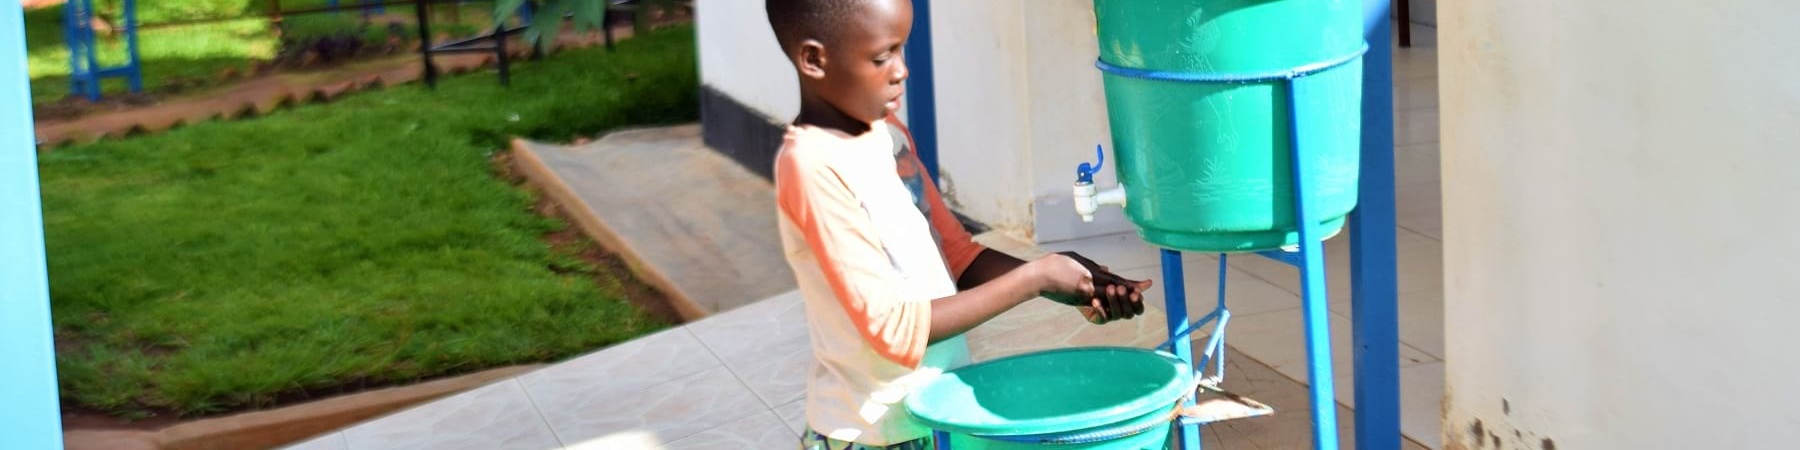 bambina del Rwanda lava le mani con rubinetto portatile